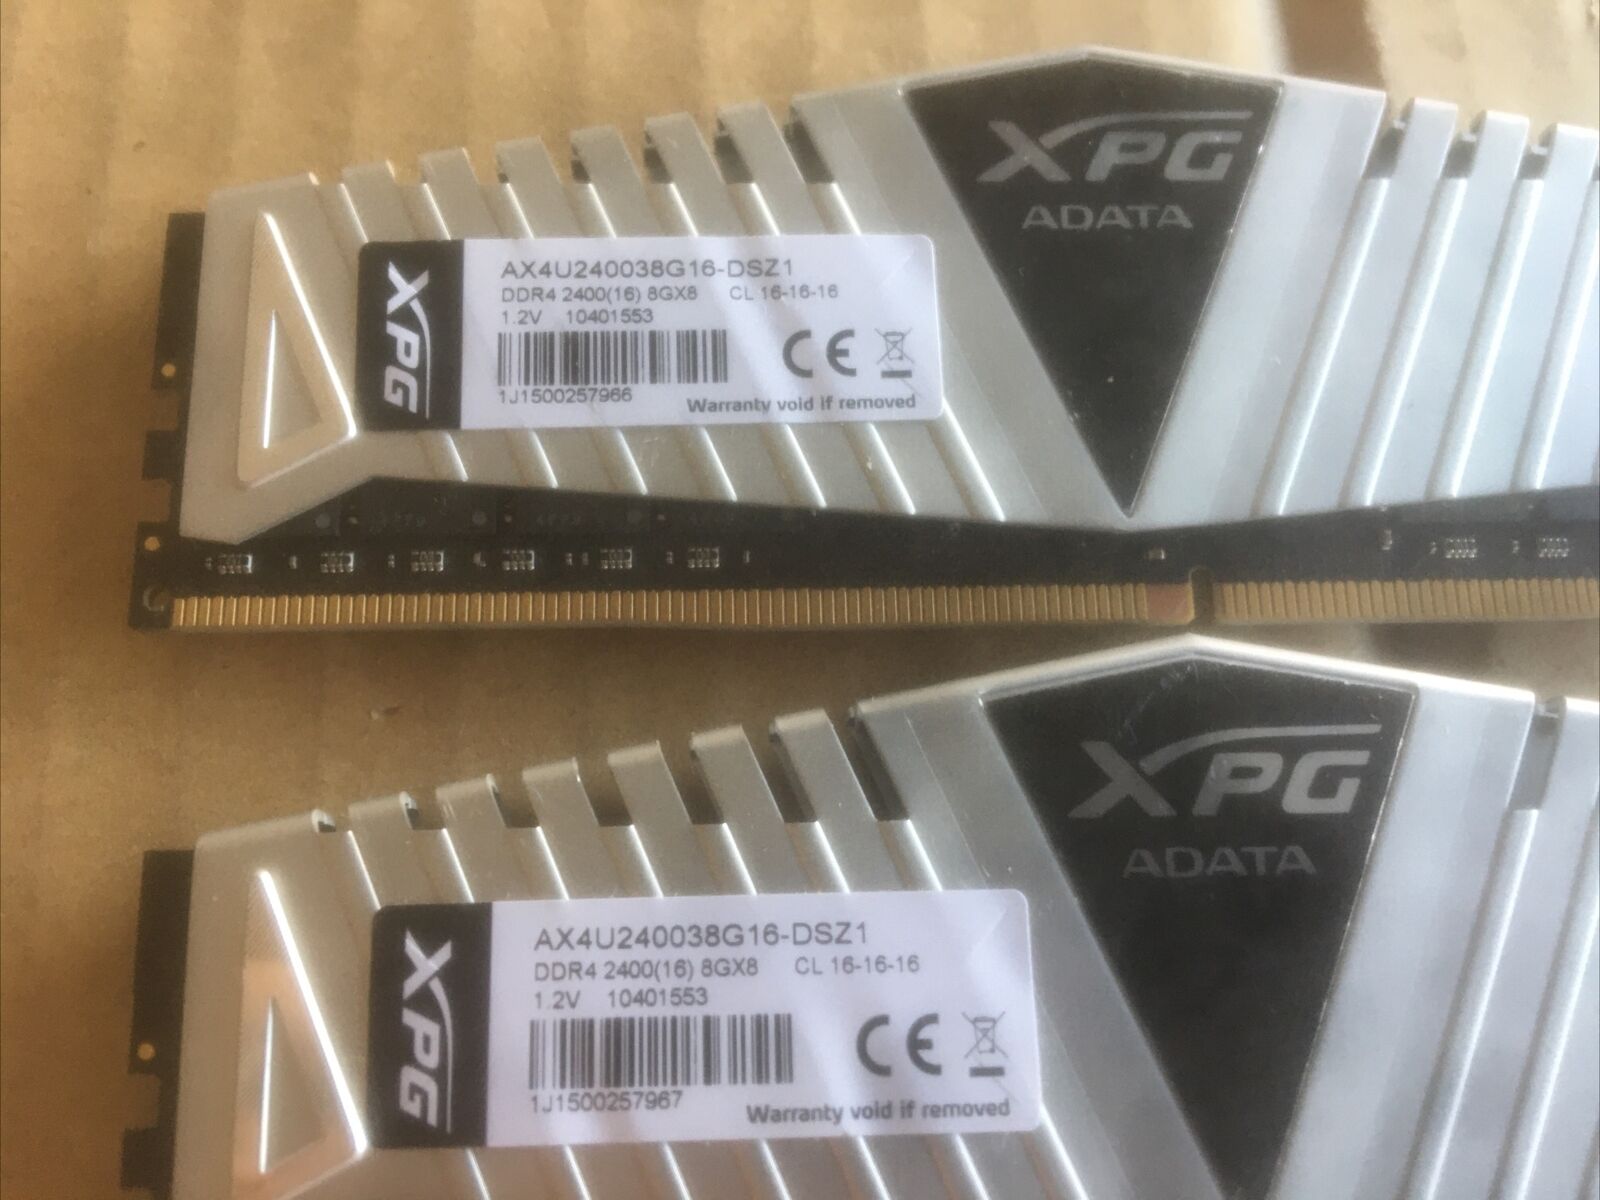 Adata XPG 16GB (2x 8GB) DDR4 2400MHz AX4U240038G16-DSZ1 Desktop Memory PC4-19200